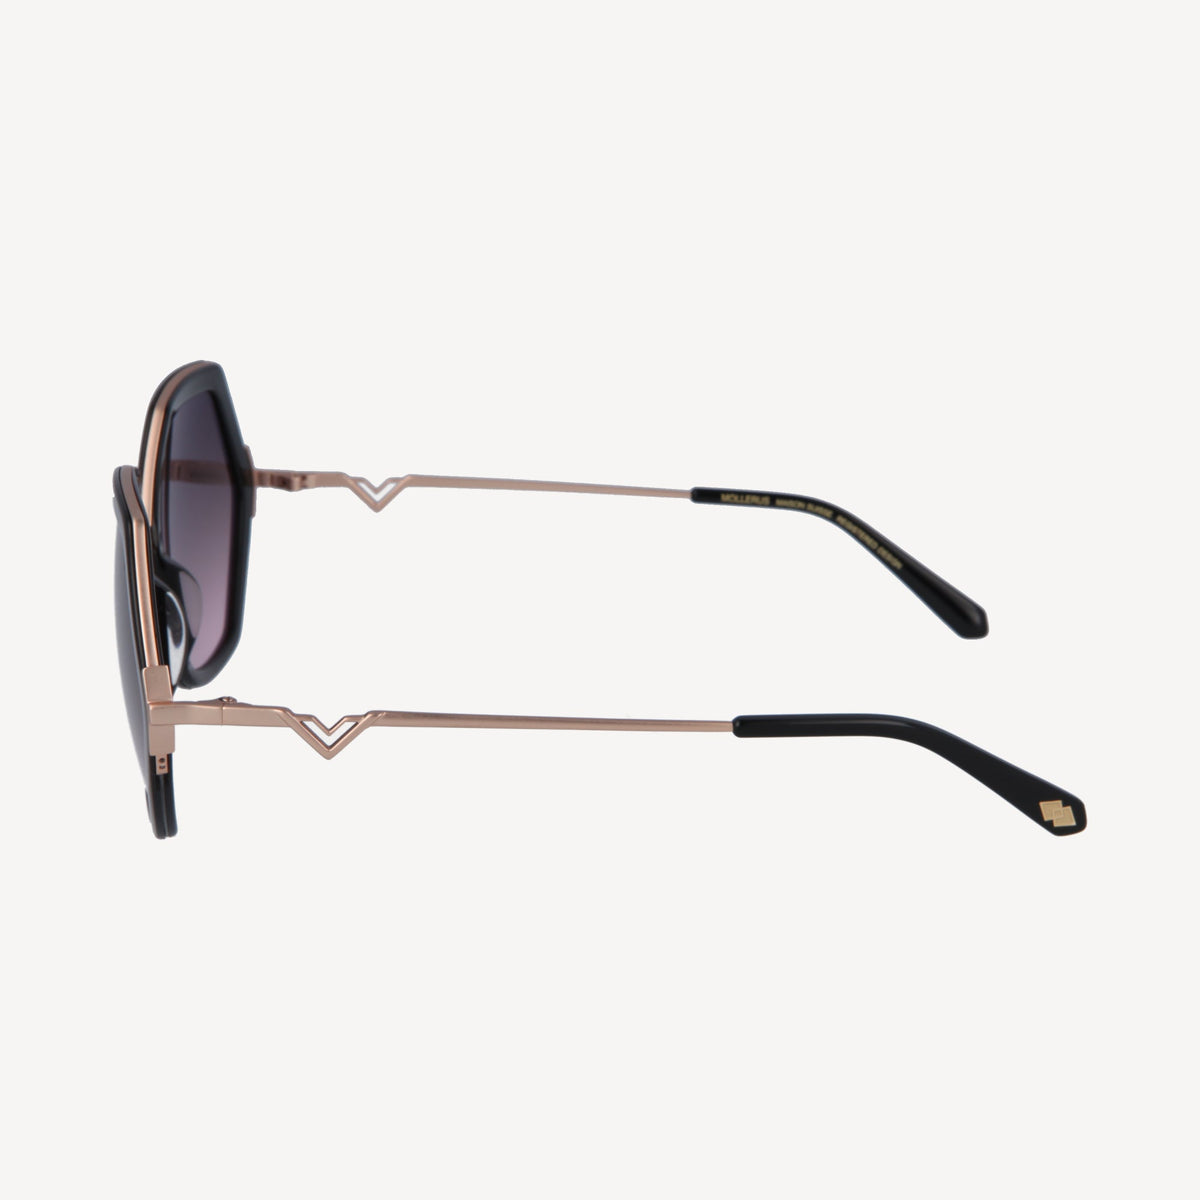 AGNEL | Sonnenbrille classic schwarz/altrosa - von der seite